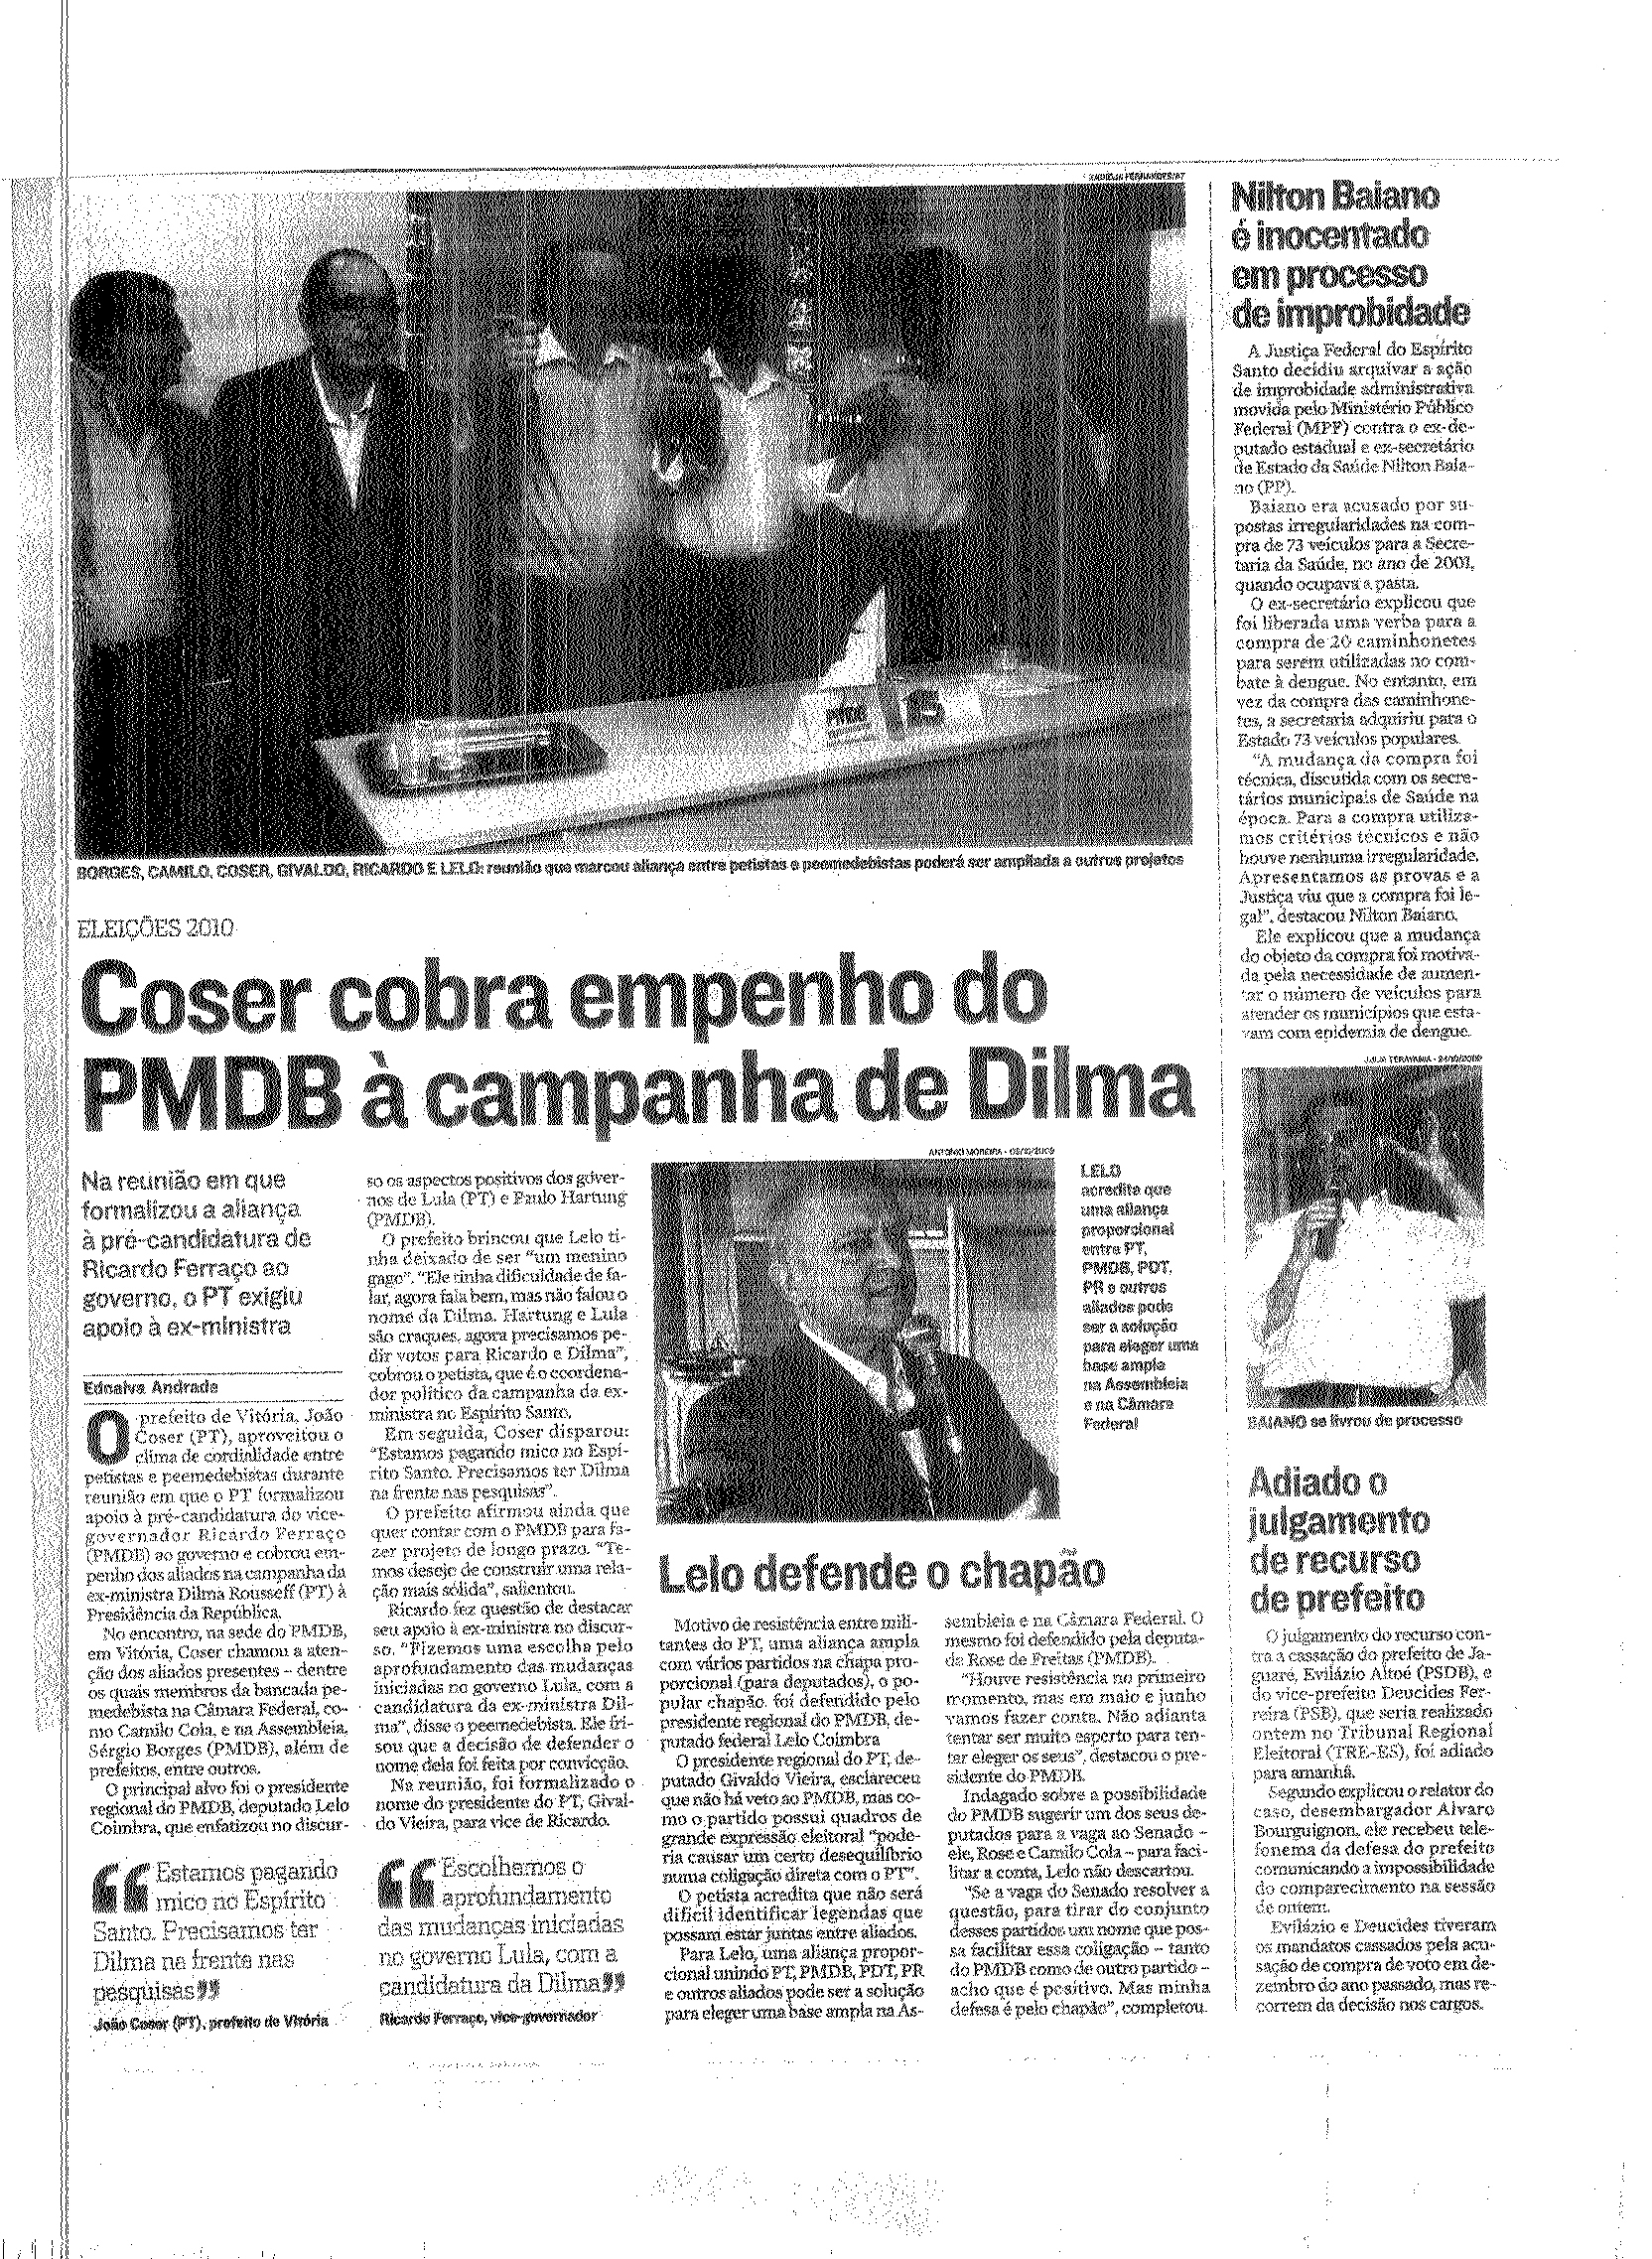 Política - Coser cobra empenho do PMDB à campanha de Dilma